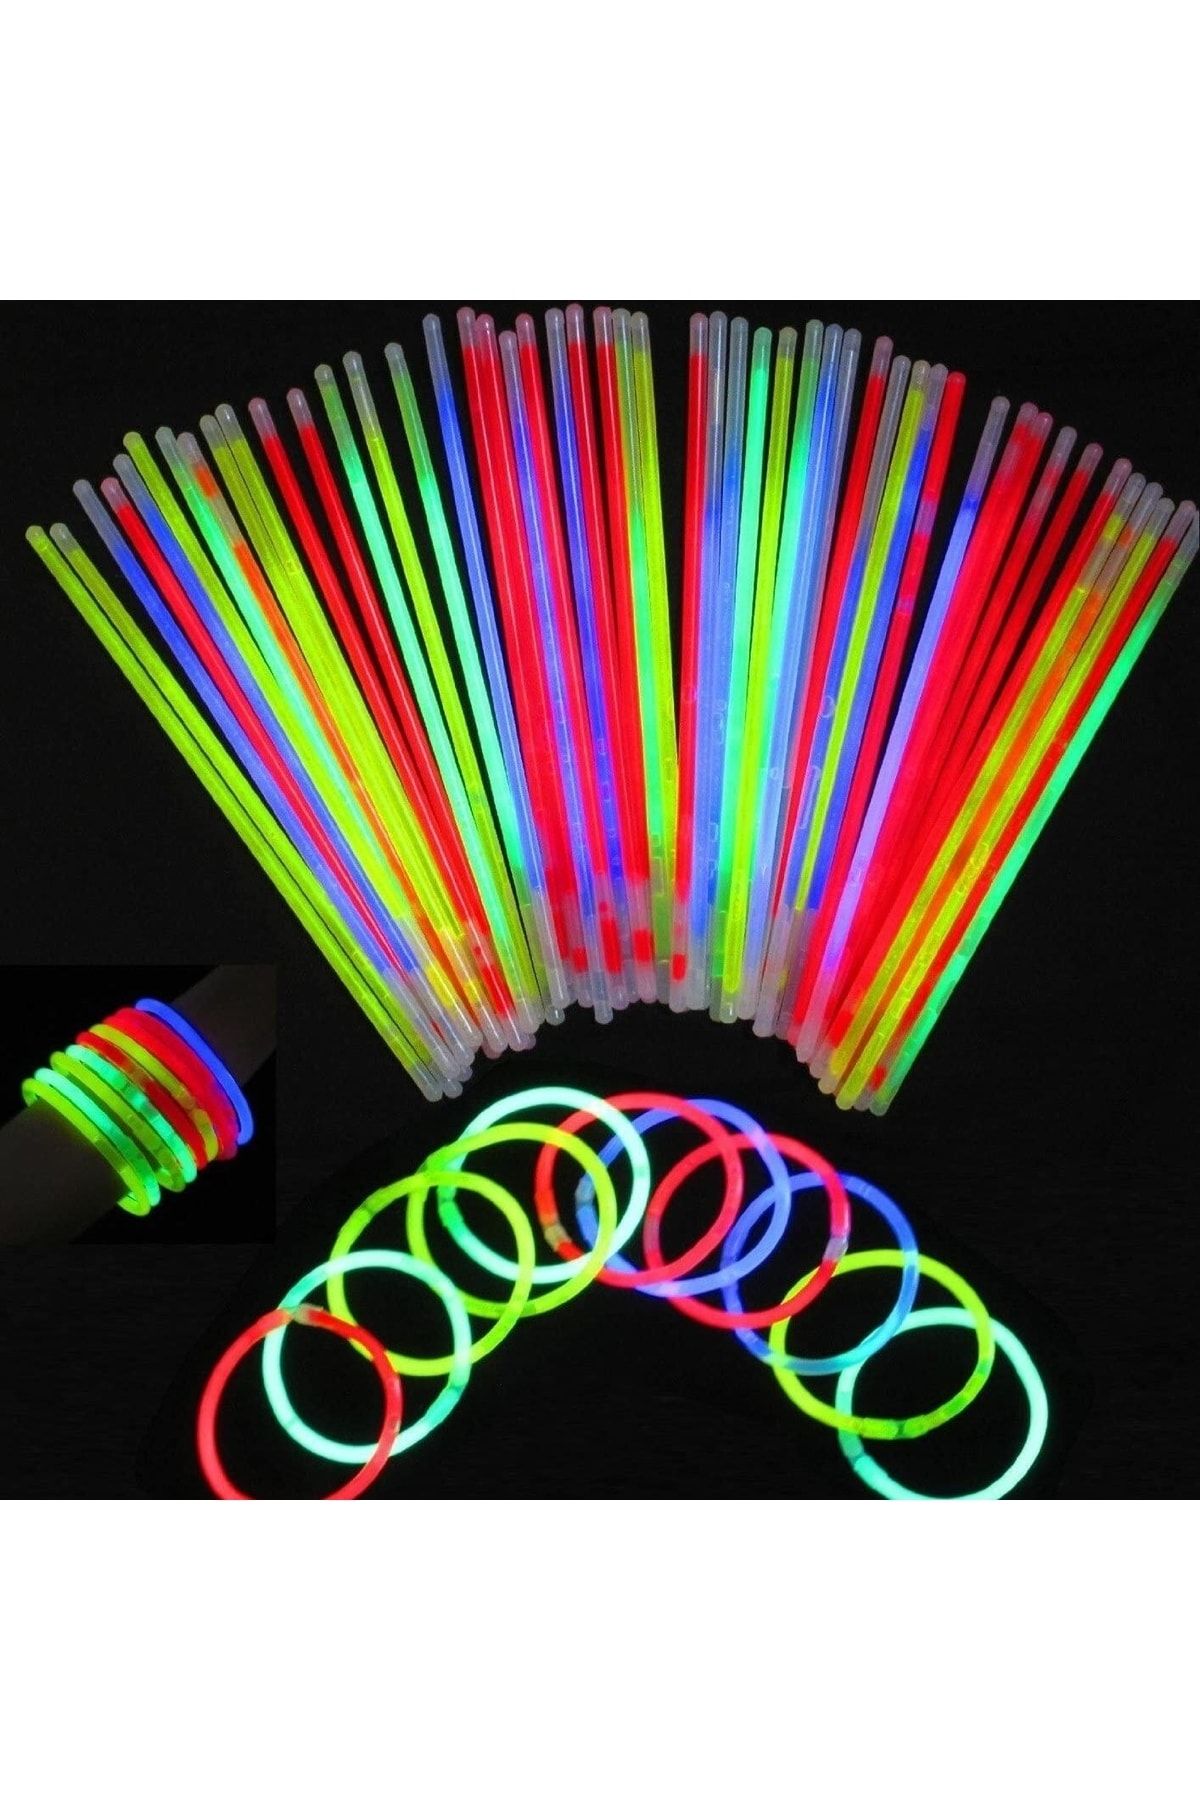 pazariz Glow Stick Fosforlu Neon Çubuk Bileklik Parti Konser Bilekliği 10 Adet